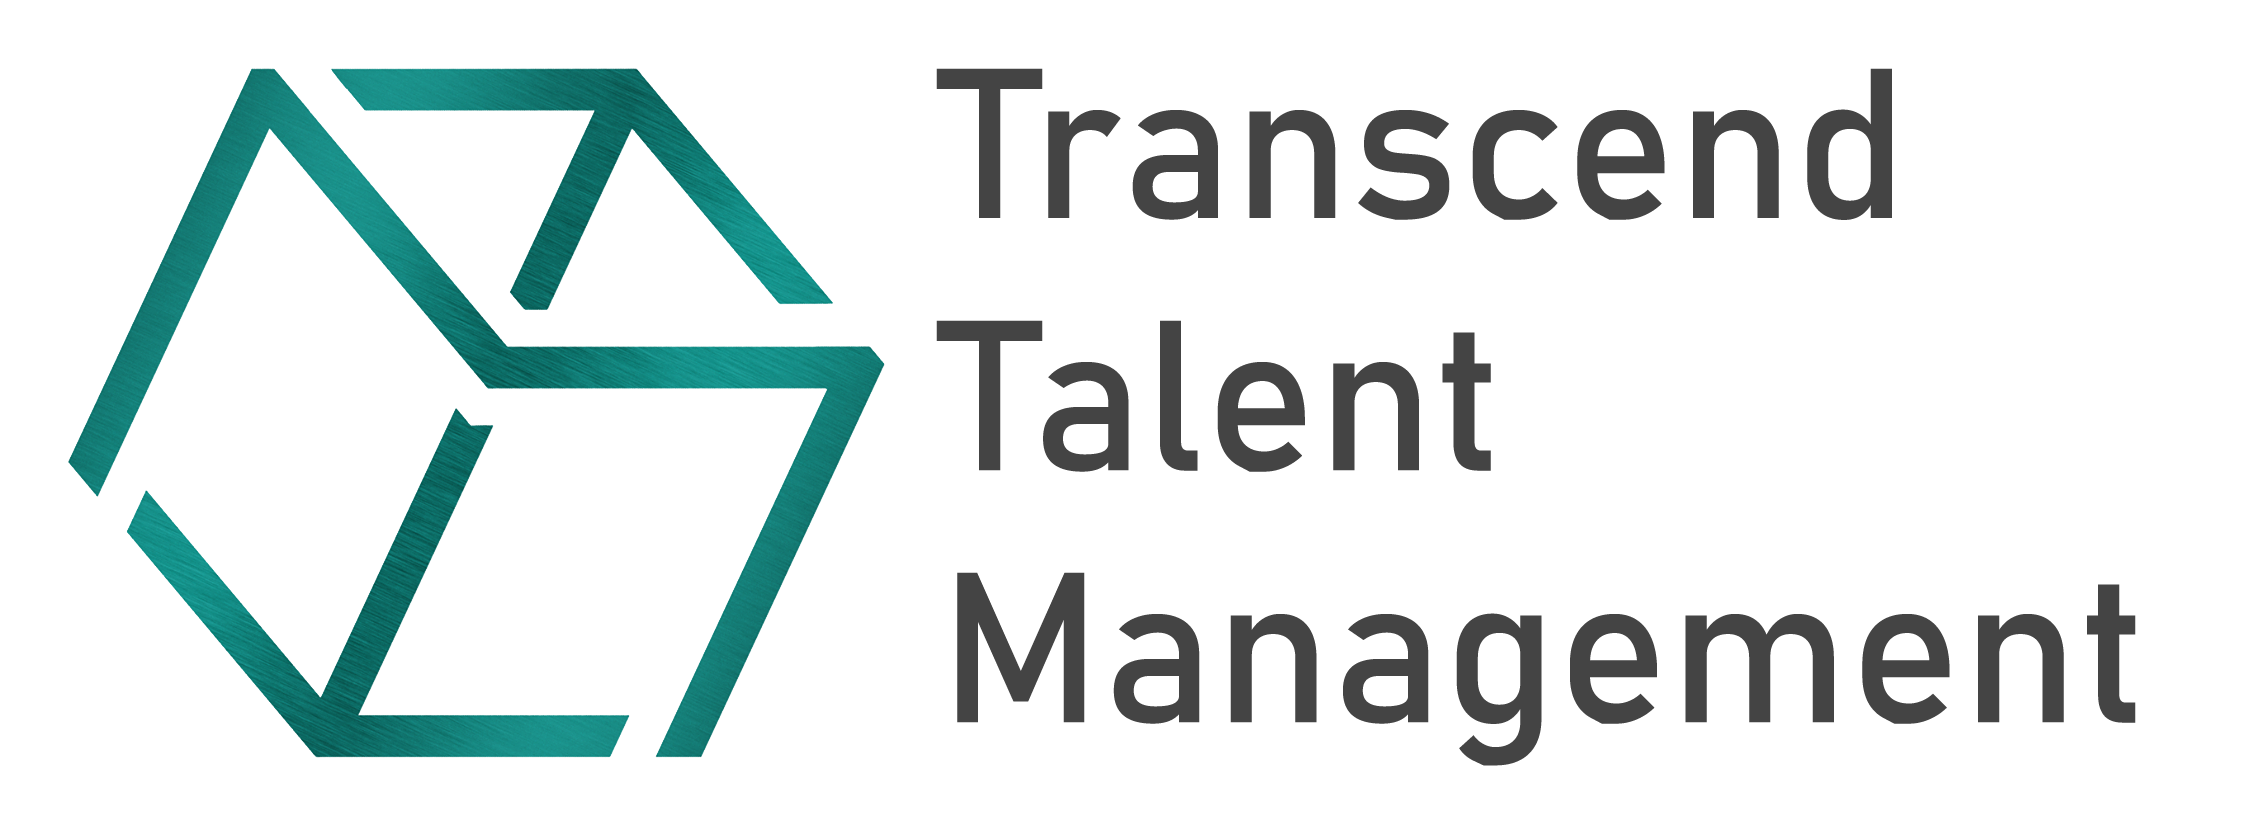 Transcend Talent Management